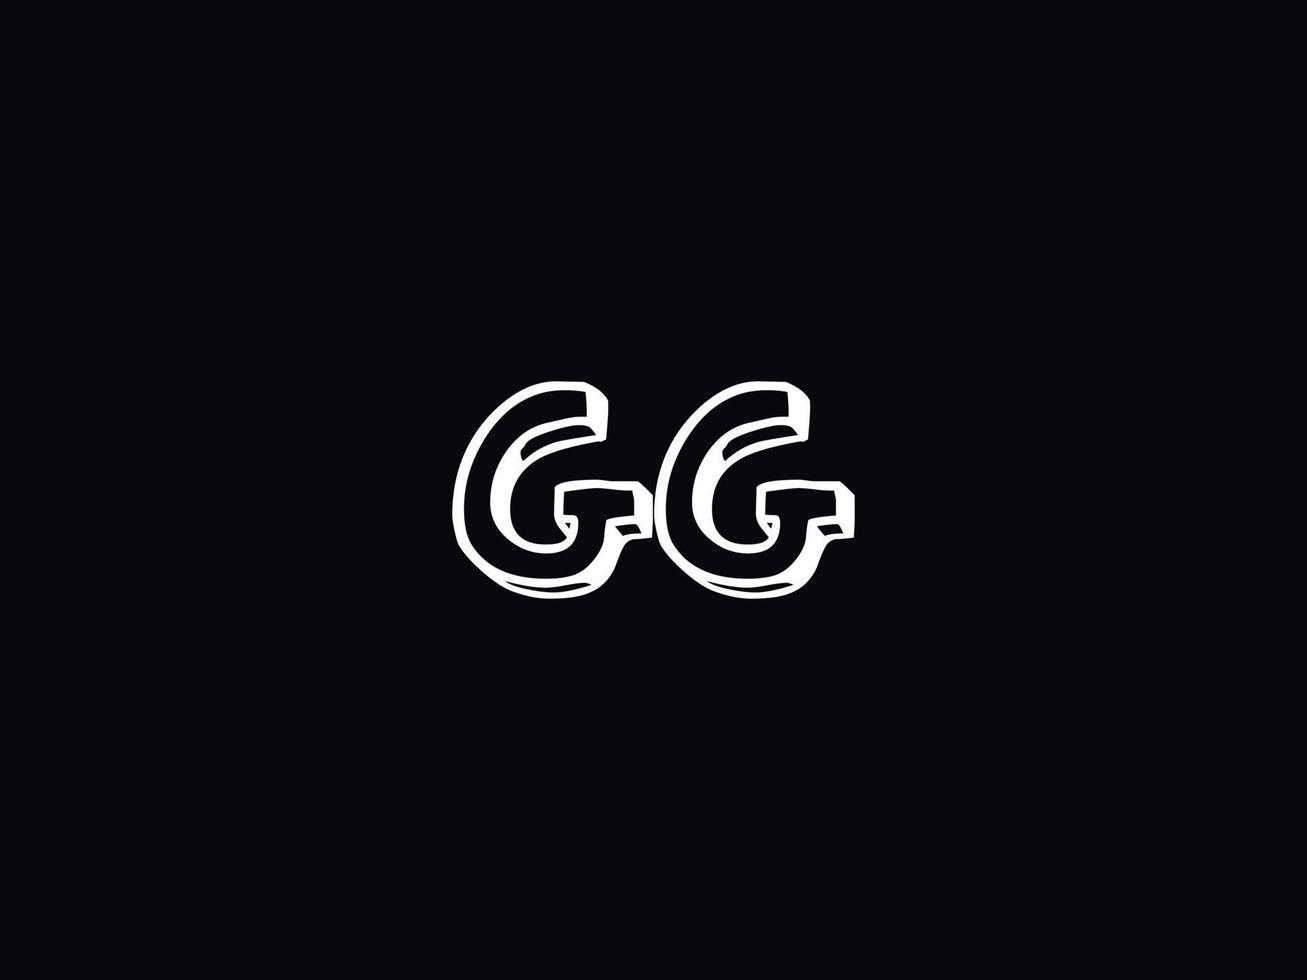 zwart wit gg logo, eerste gg brief logo icoon vector